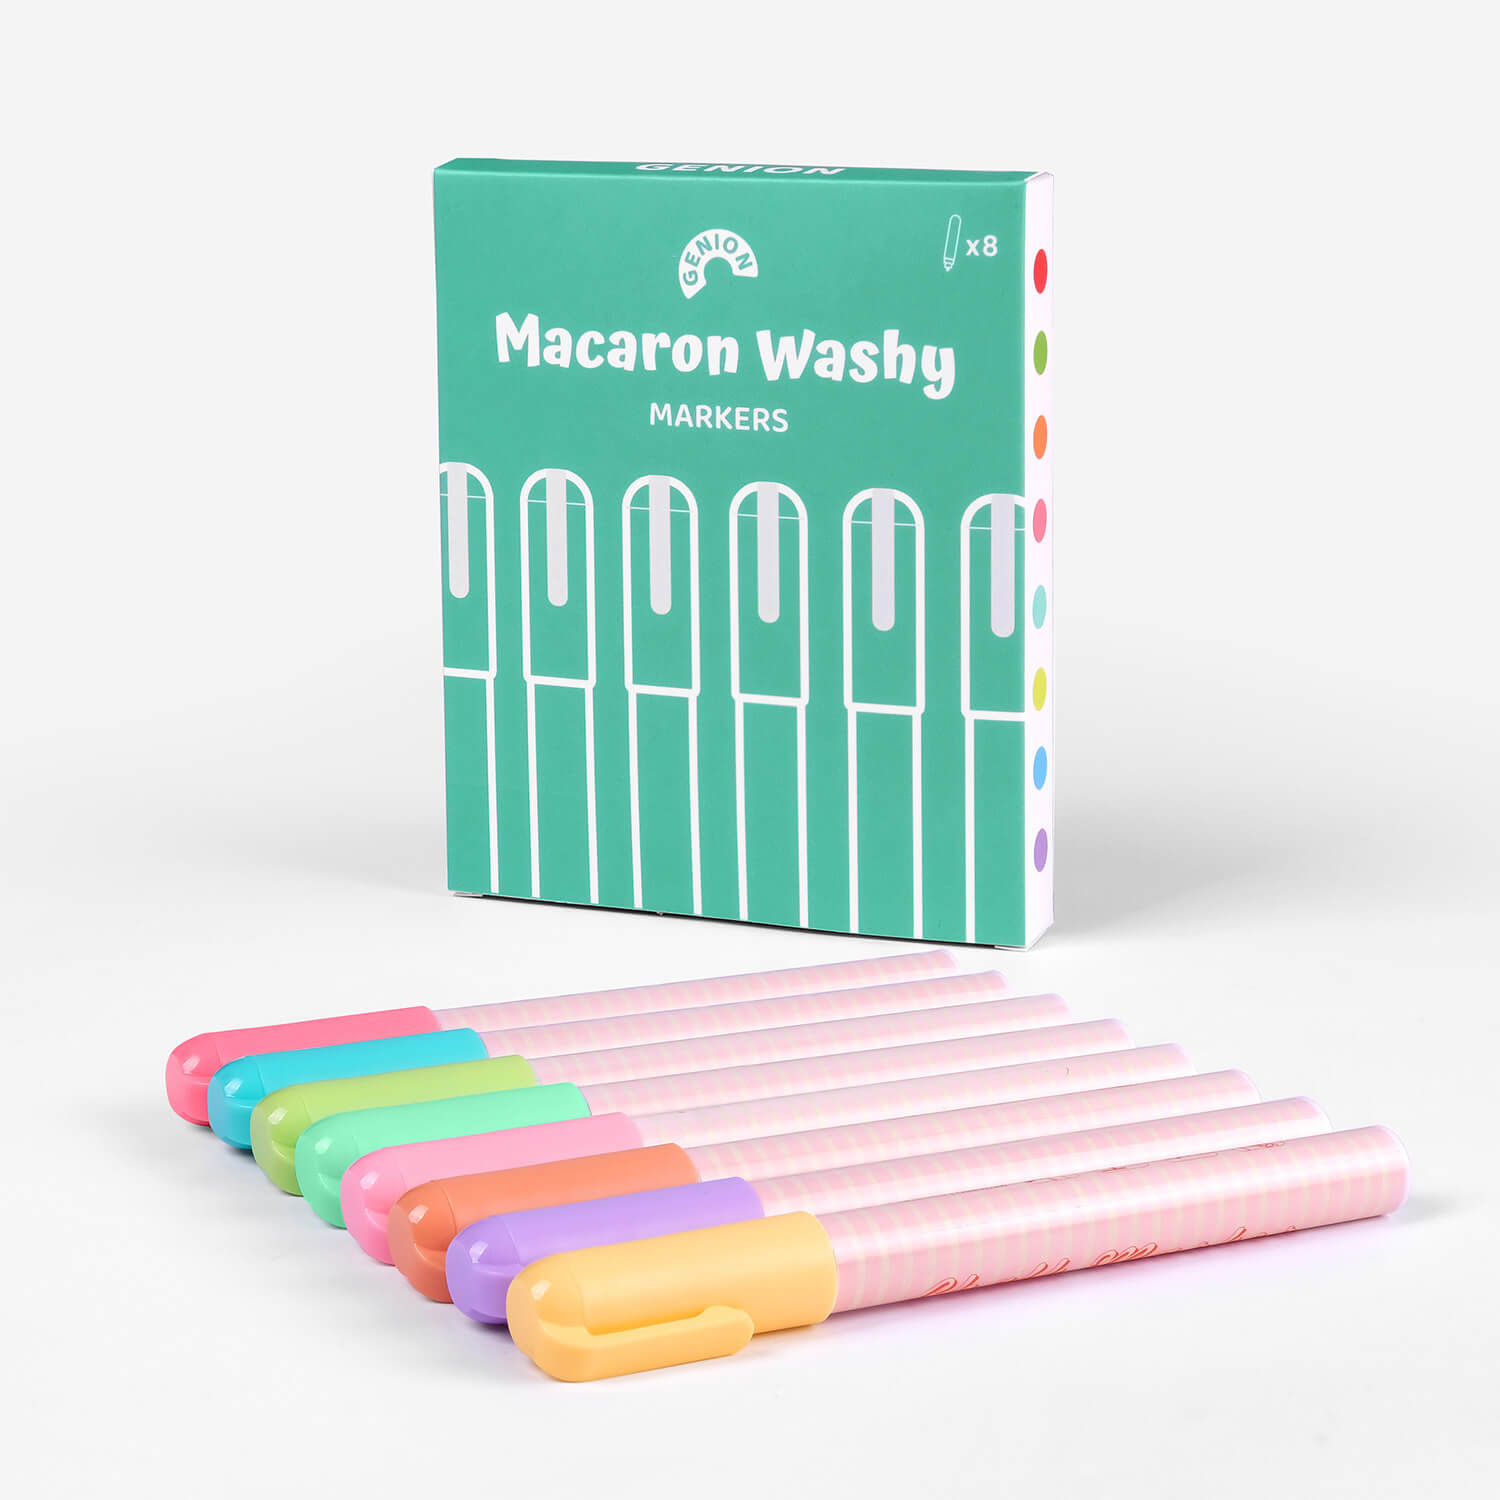 Macaron Washy Markers